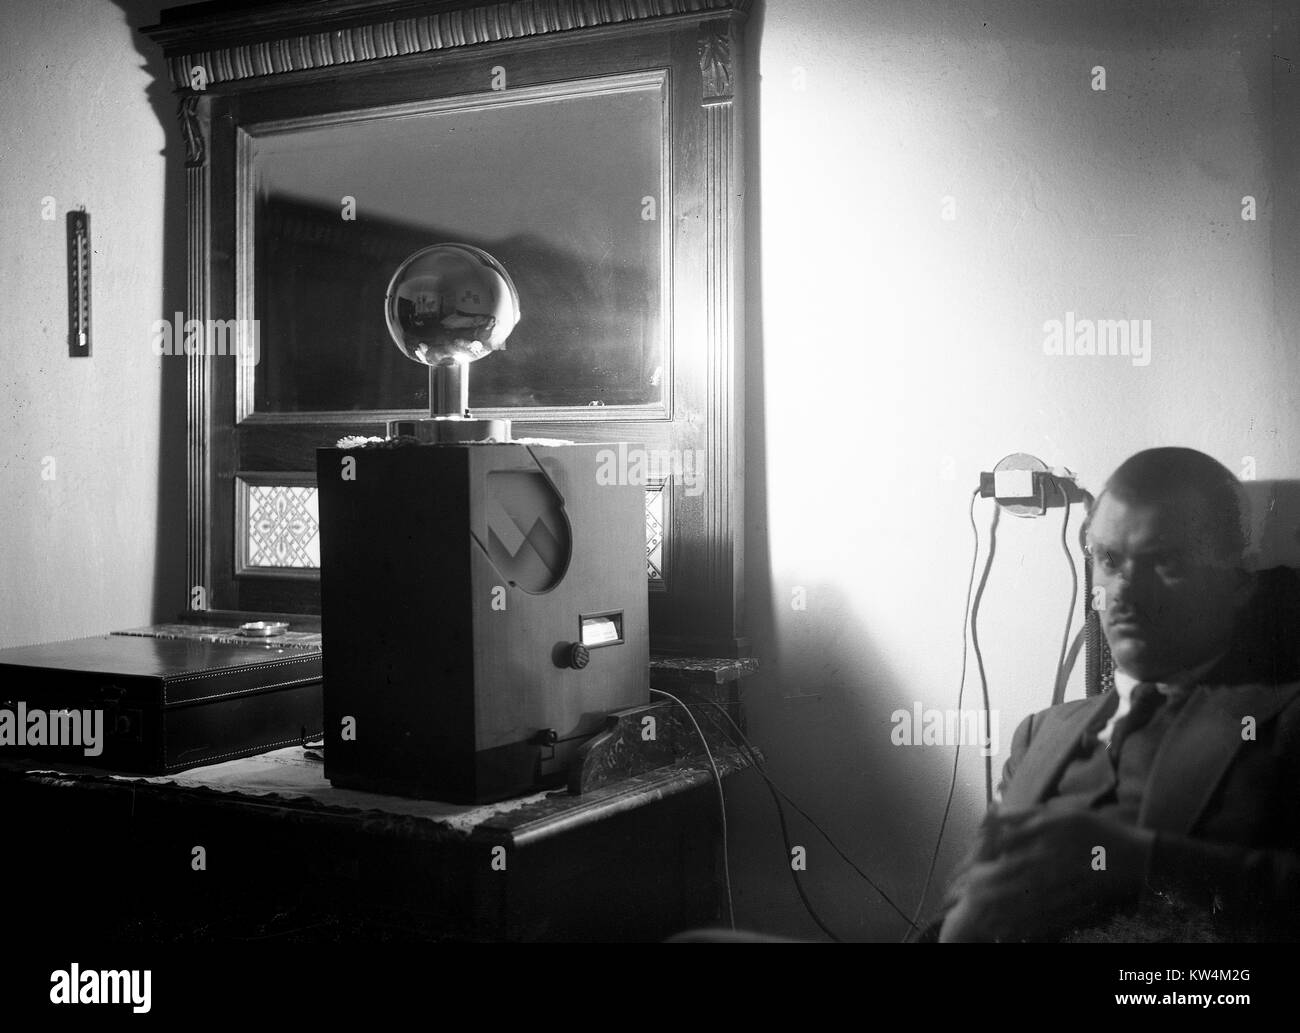 Ein Mann mit einem Stern Ausdruck sitzt in einem dunklen Raum und hört einen großen Radio, das auf einem Schreibtisch sitzt, als eine kleine Lampe über dem Radio auf eine Wand Spiegel reflektiert, die Beleuchtung des Raumes in krassem Schatten, mit einem Aktenkoffer auf dem Schreibtisch, Ungarn, 1929 sichtbar. Von einem Gelatine Prozess Glasplatte negative digitalisiert. Stockfoto